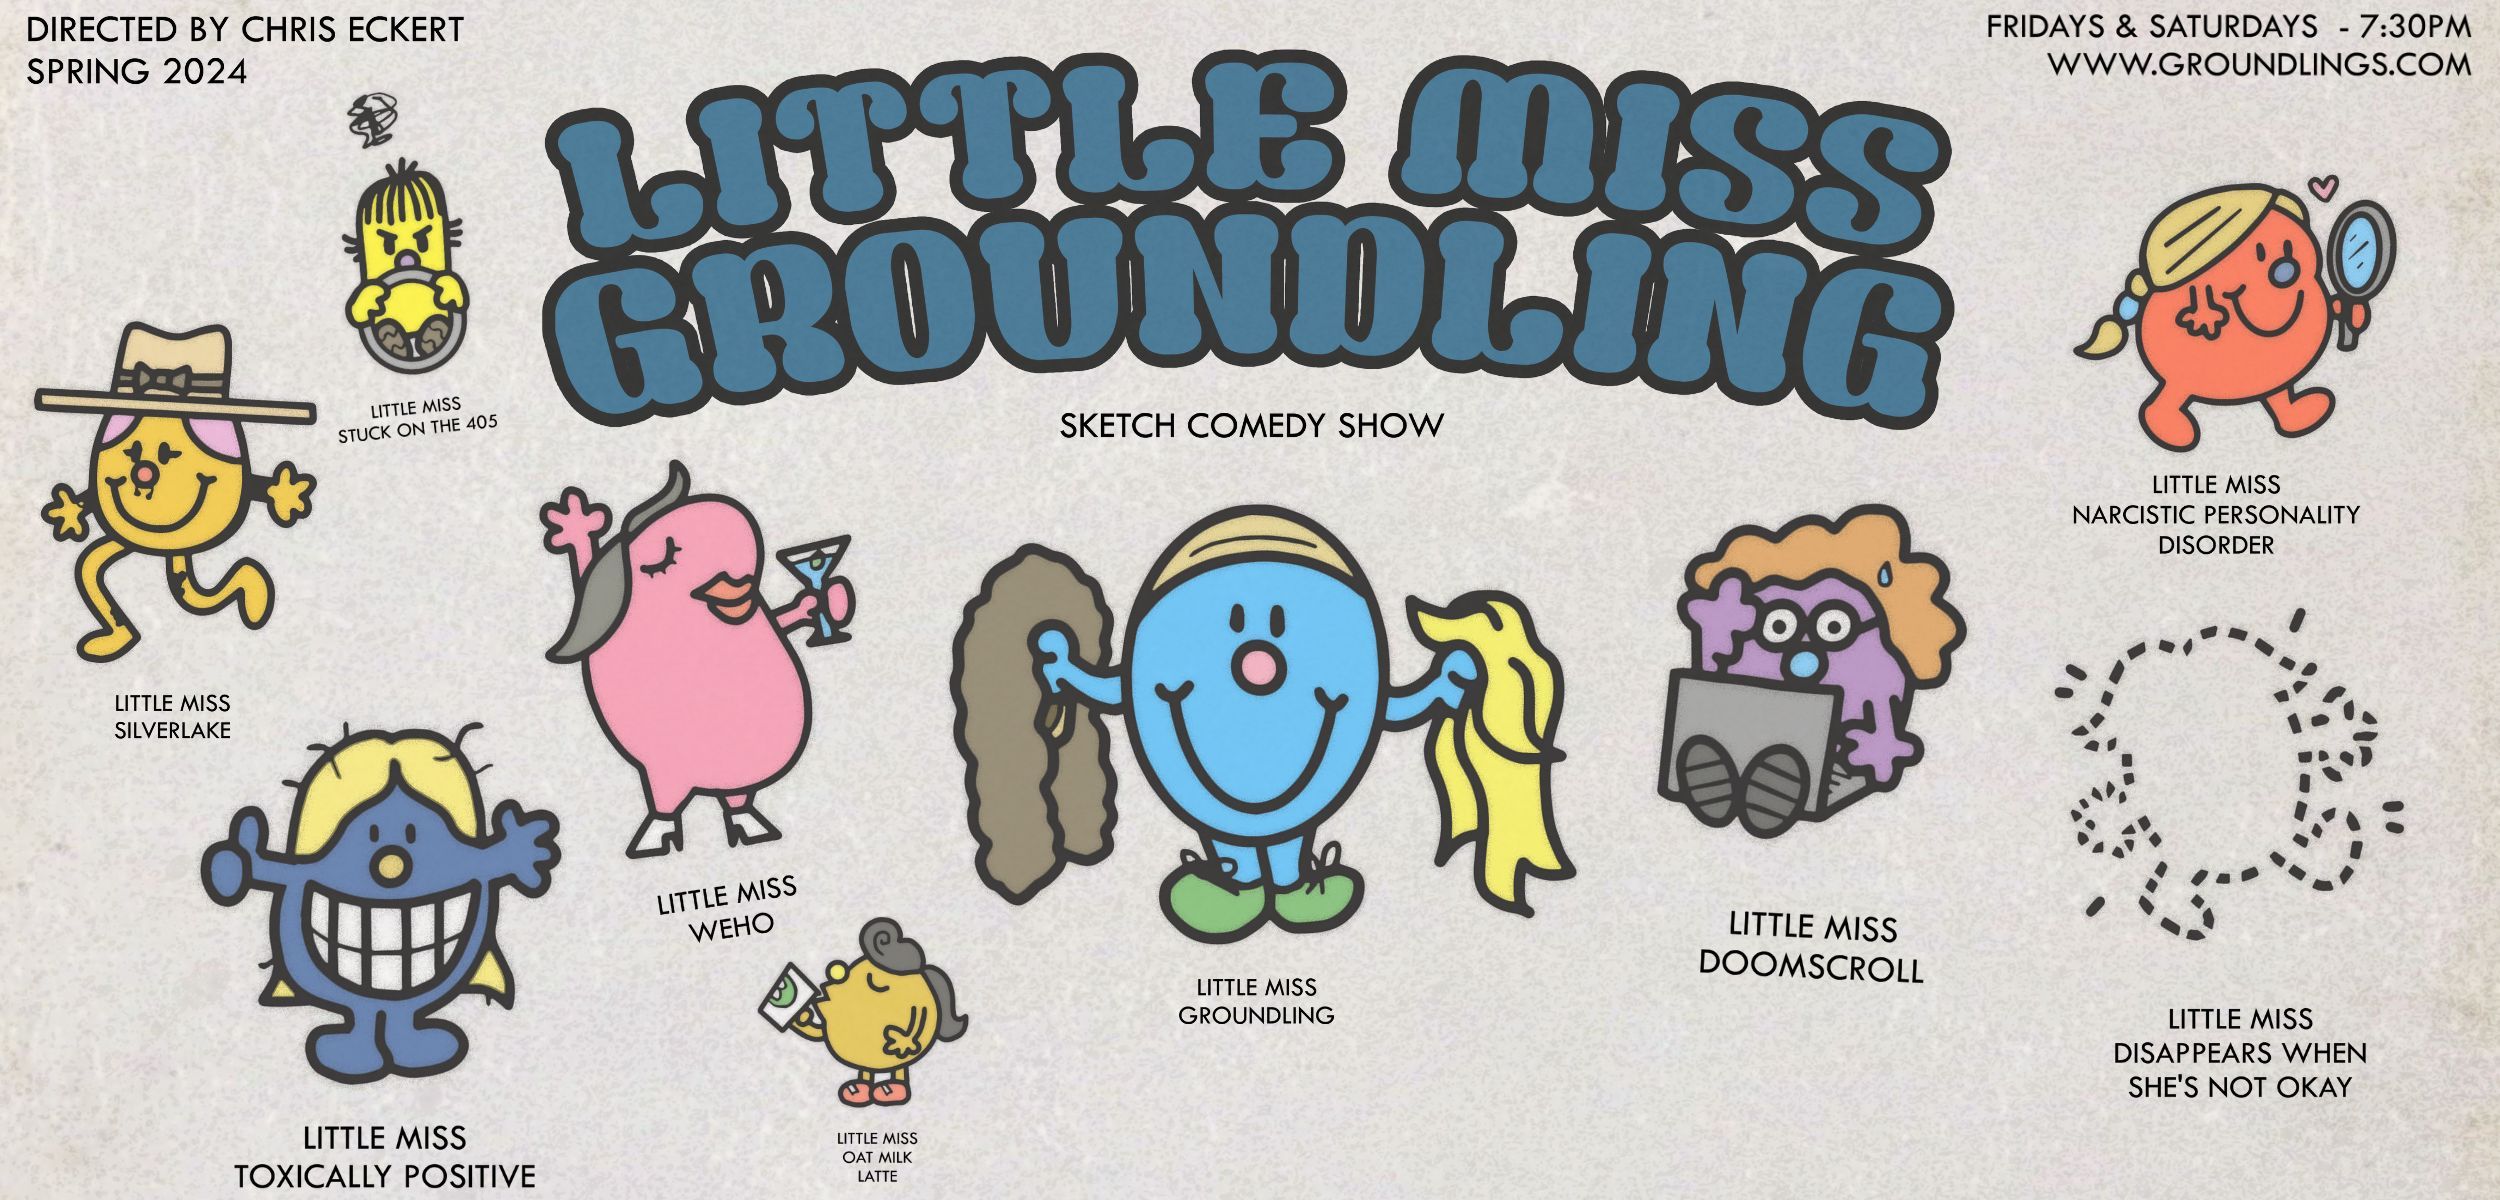 https://groundlings.com/shows/little-mis-groundlings